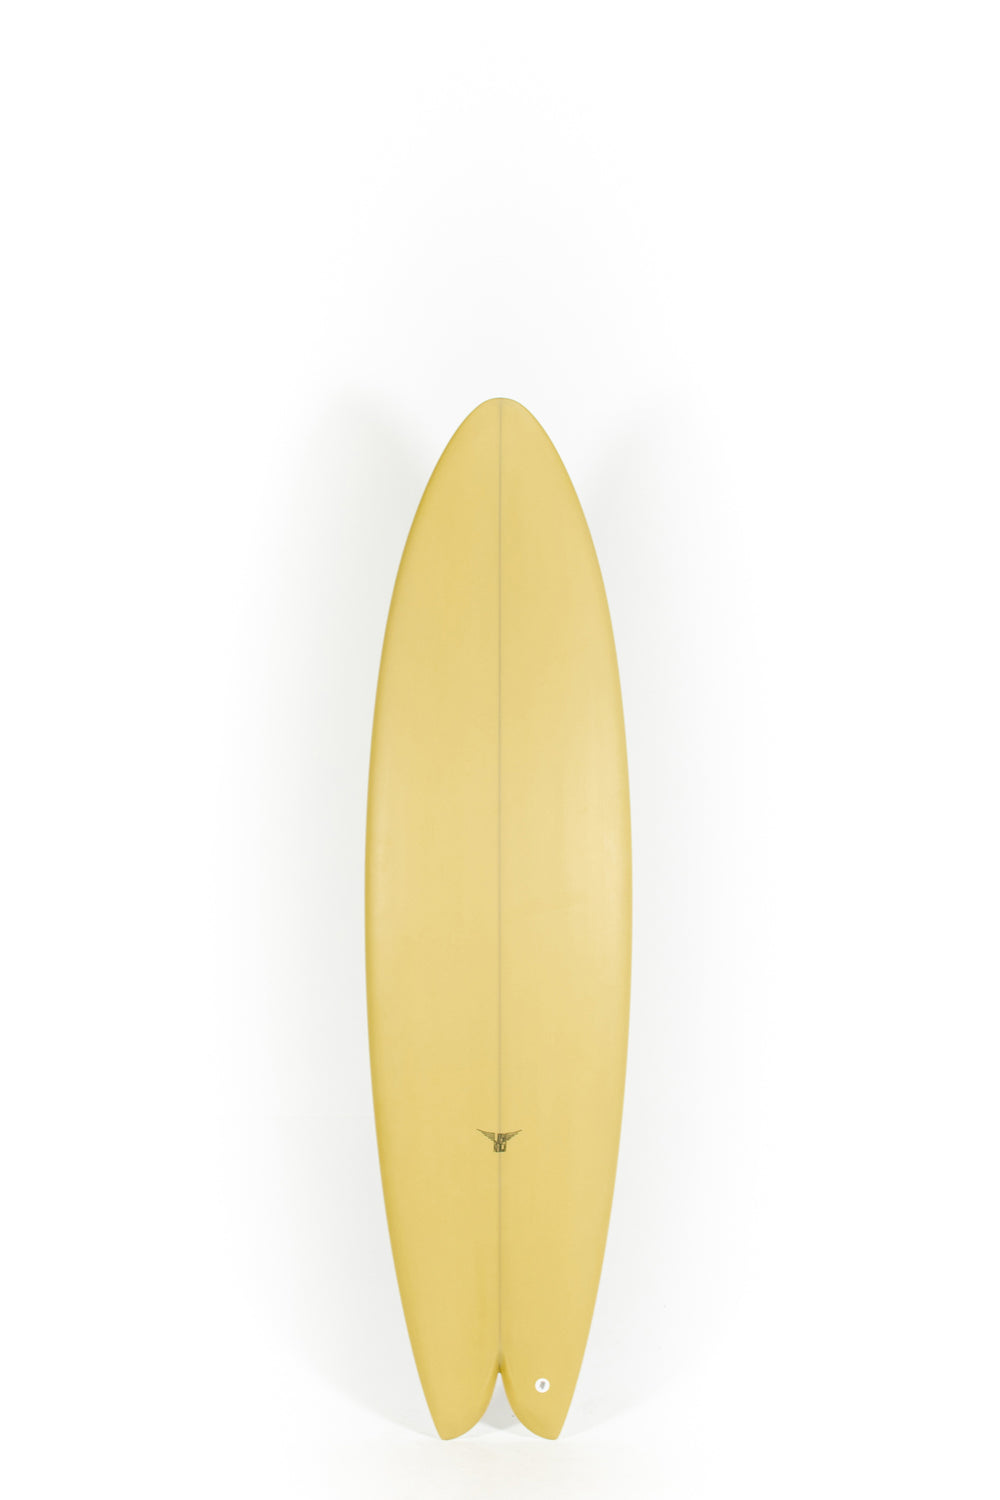 Pukas Surf Shop_Joshua Keogh Surfboard - M2 by Joshua Keogh - 6'10